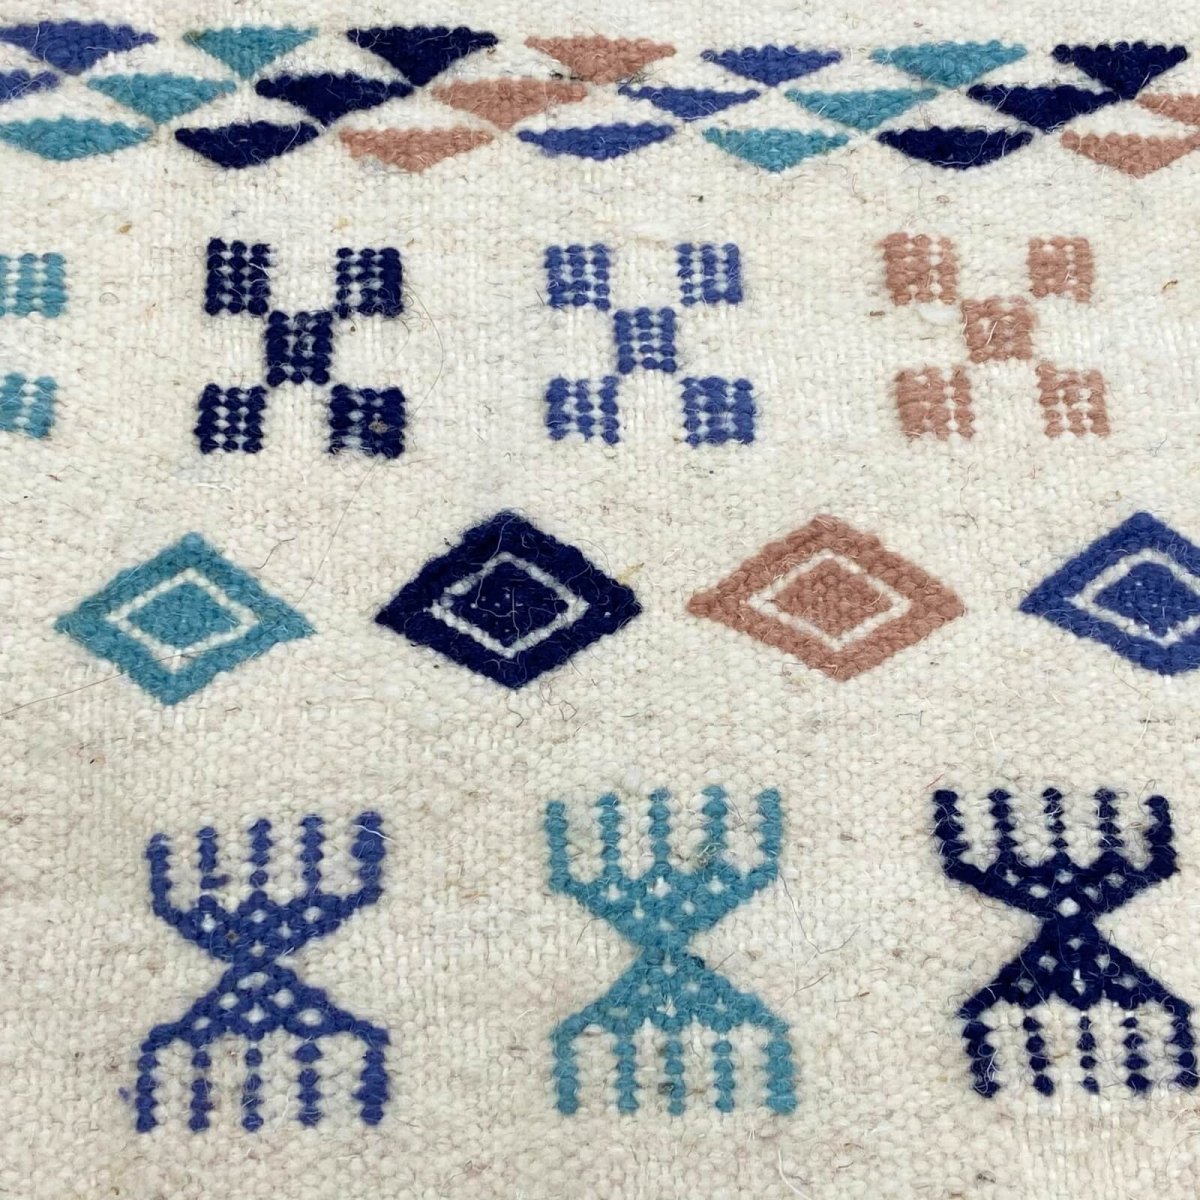 Tapete berbere Tapete Kilim 135x205 cm Branco Azul Marrom | Tecidos à mão, Lã, Tunísia Tapete tunisiano kilim, estilo marroquino